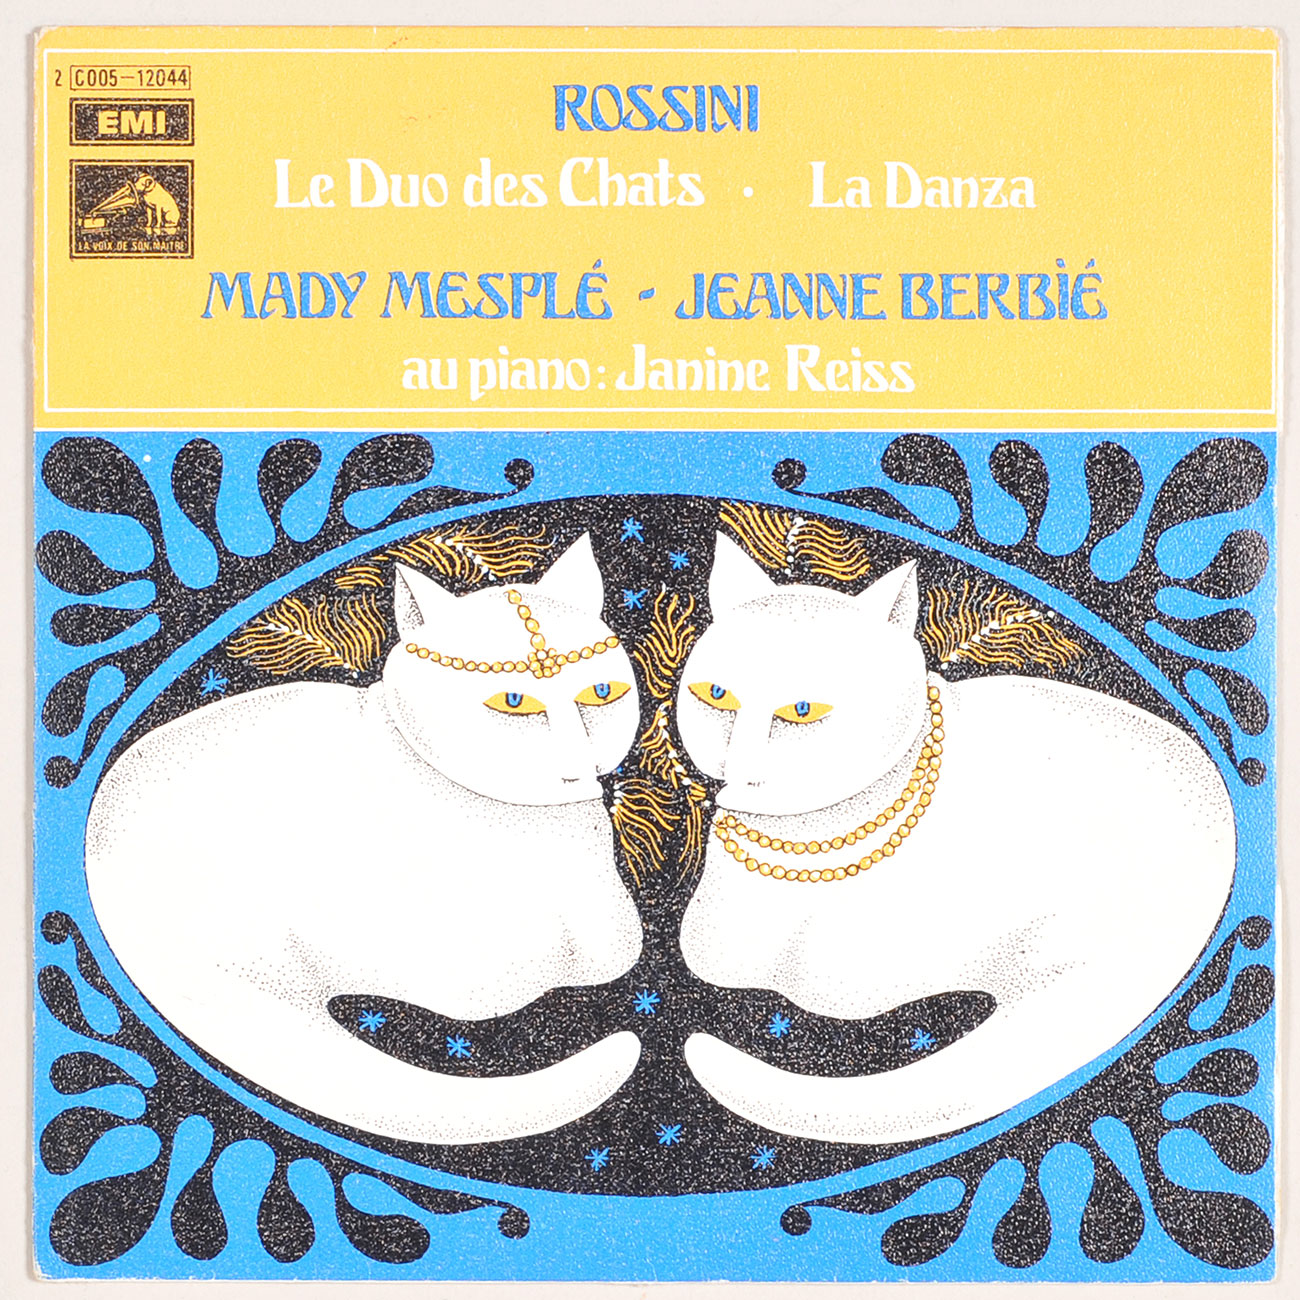 Gioachino Rossini Mady Mesplé et Jane Berbié, au piano Janine Reiss Pochette de vinyle, 1972 © Mucem/Yves Inchierman 